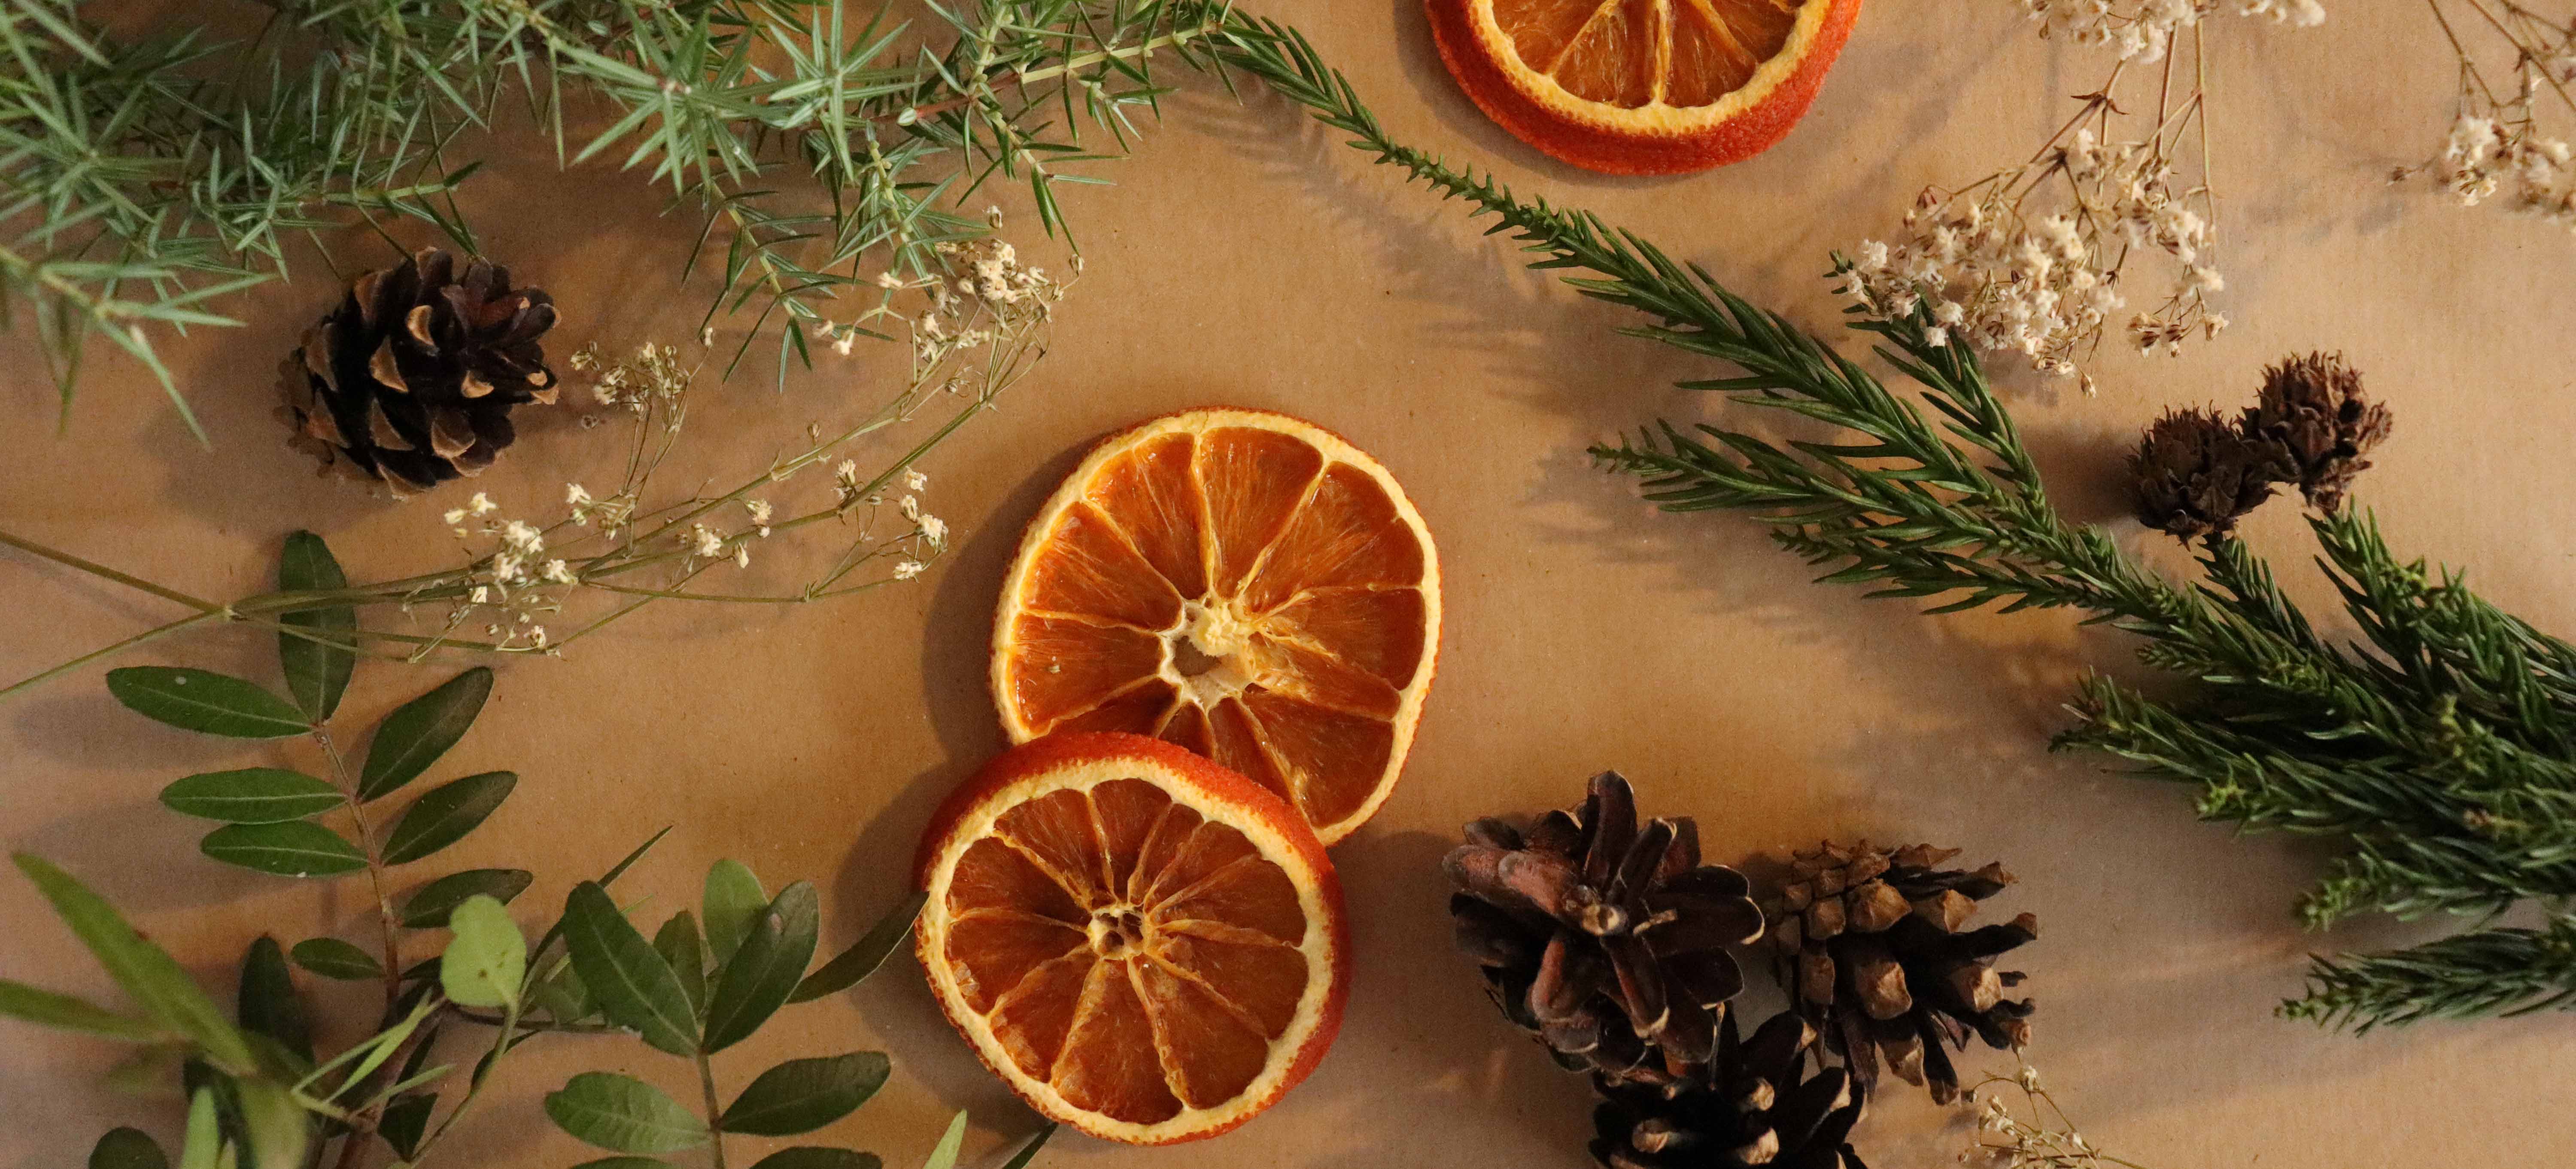 Weihnachtsschmuck: Getrocknete Orangen, Tannanzenzapfen und mehr